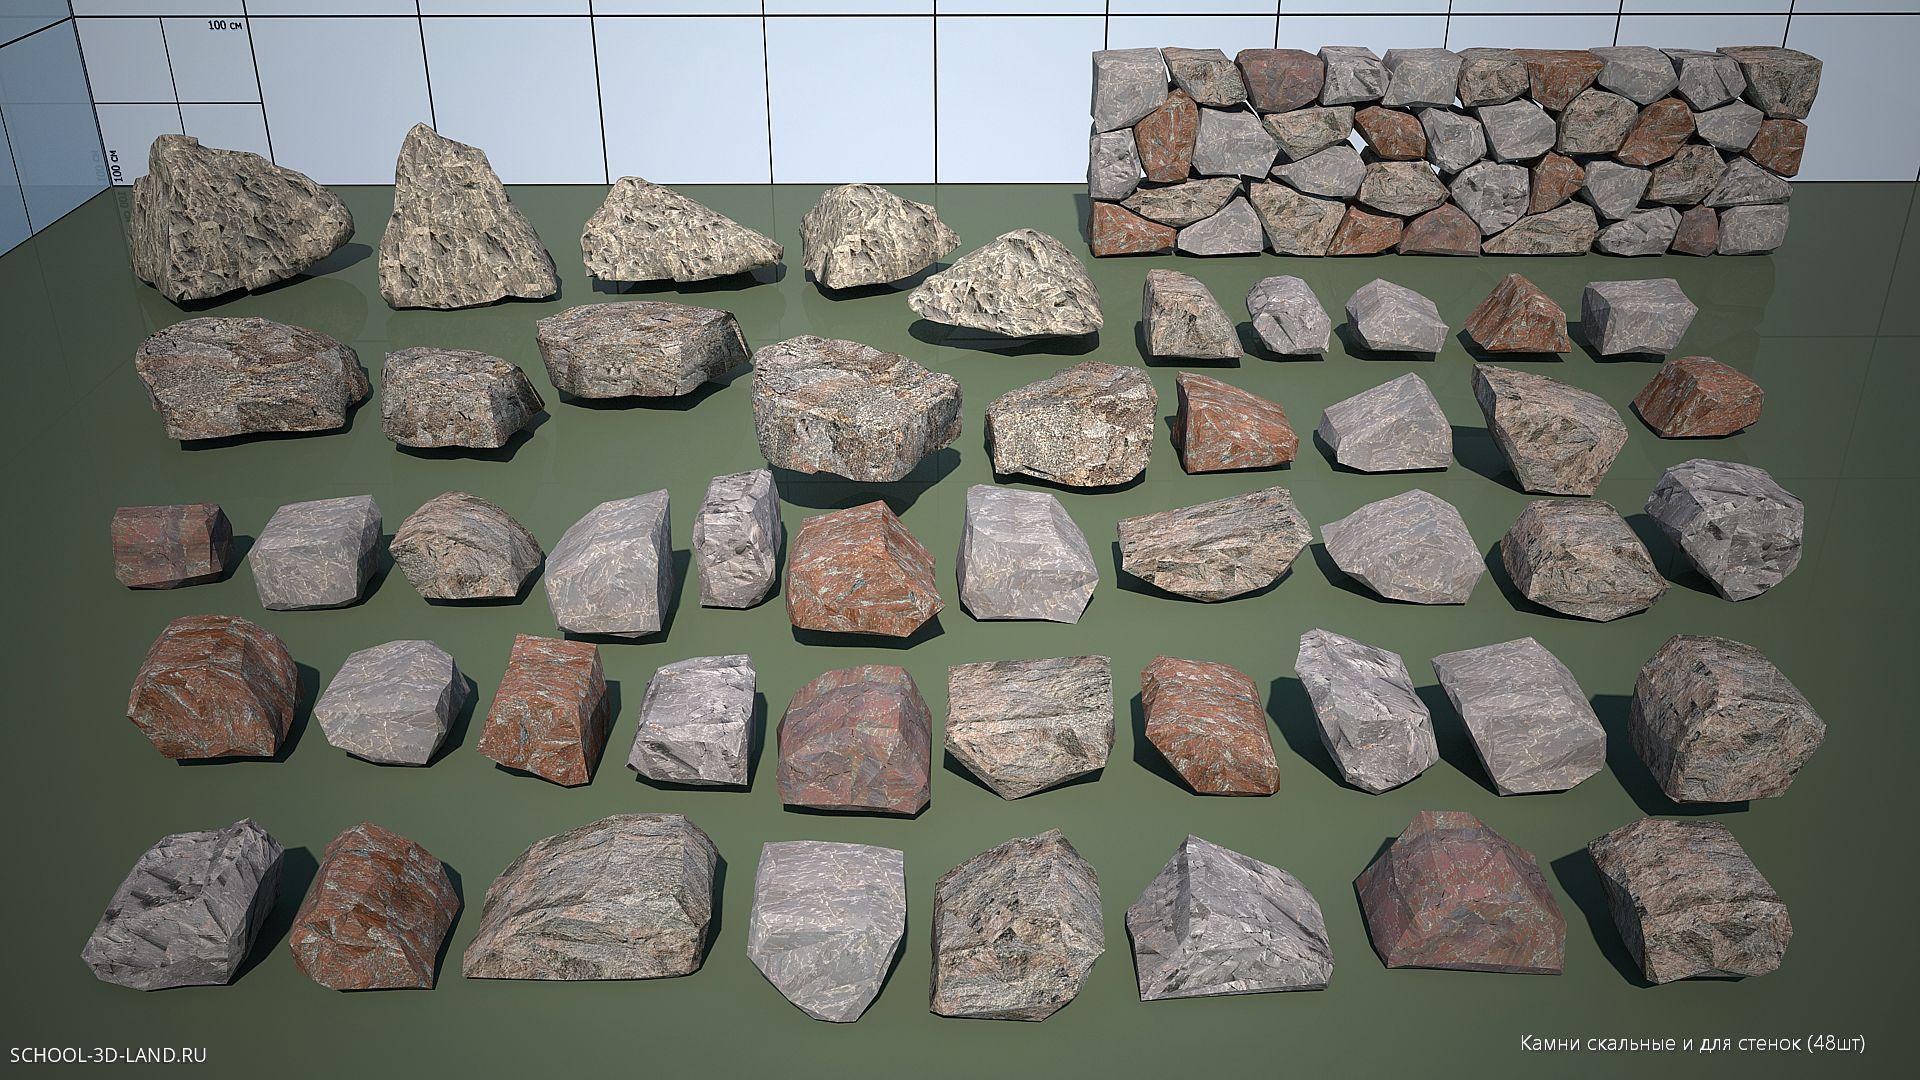 Камни скальные и для стенок (48шт)